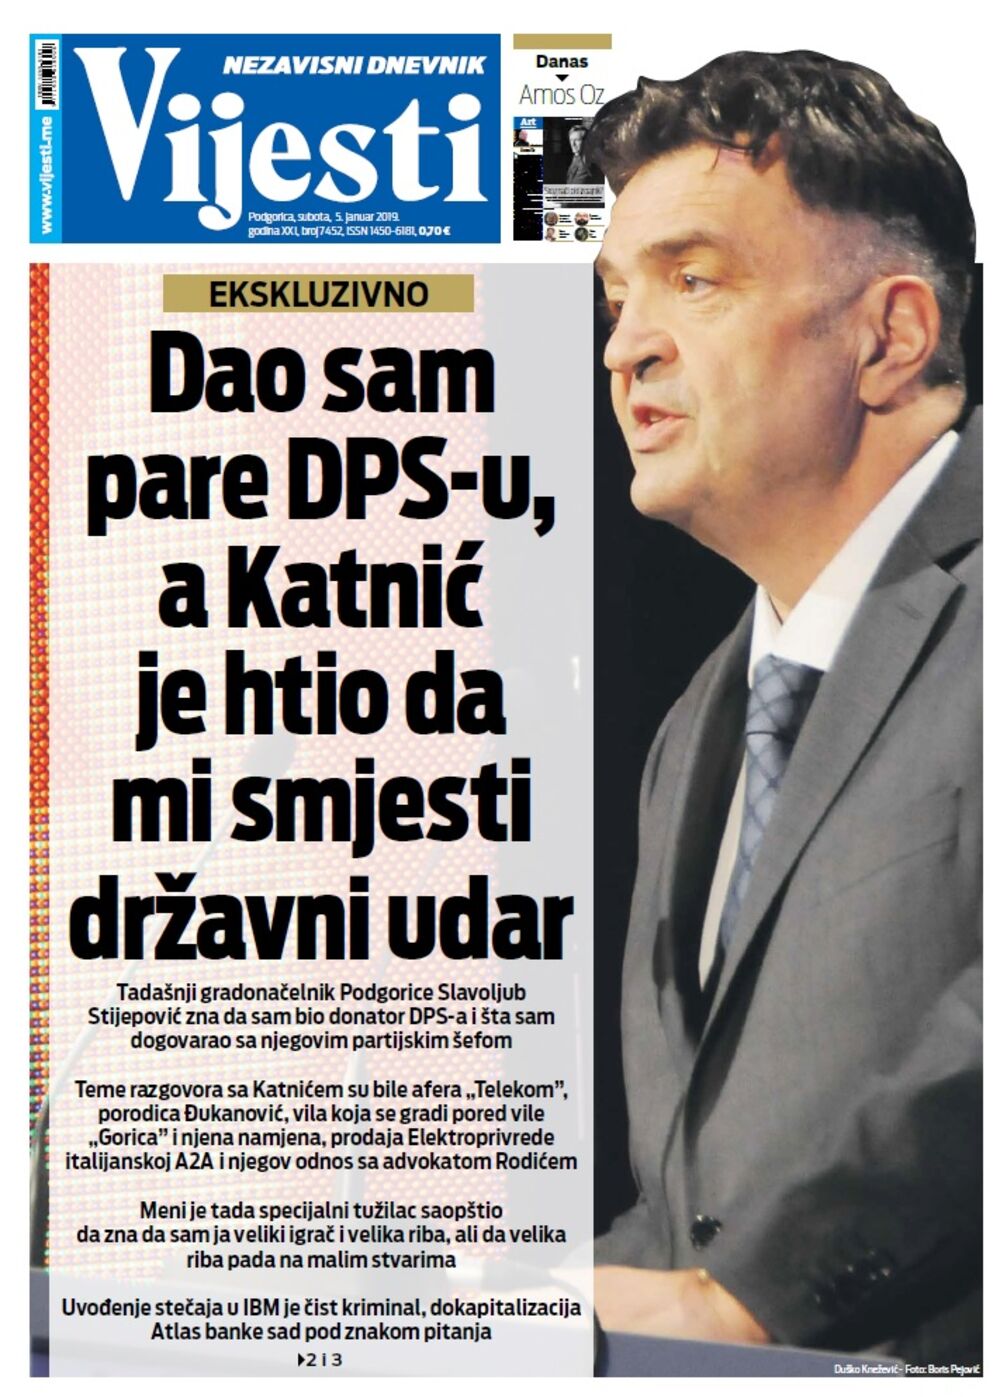 Naslovna strana "Vijesti" za 5. januar, Foto: Vijesti